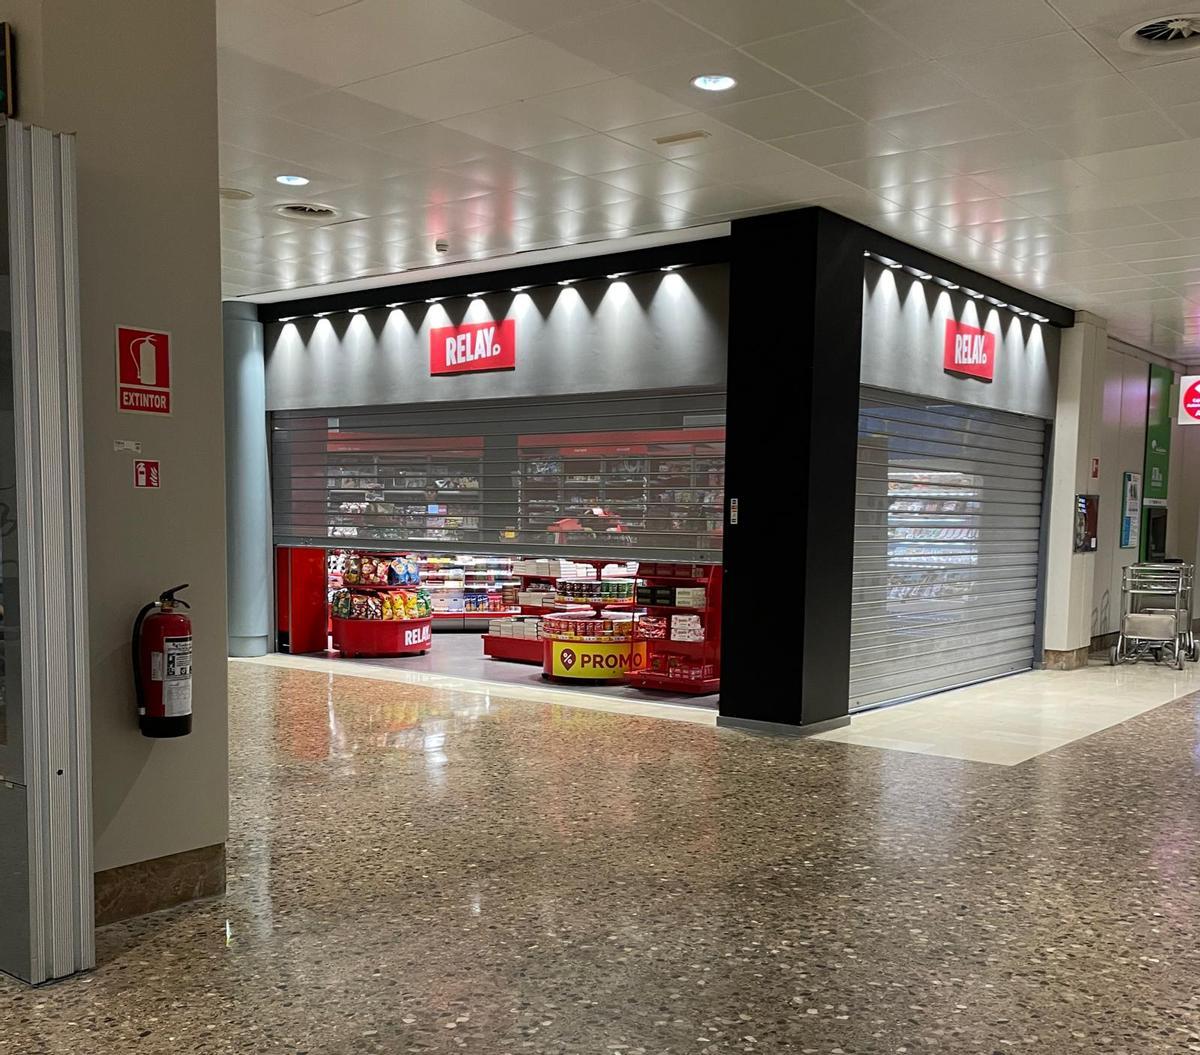 La tienda Relay en el aeropuerto de Asturias.